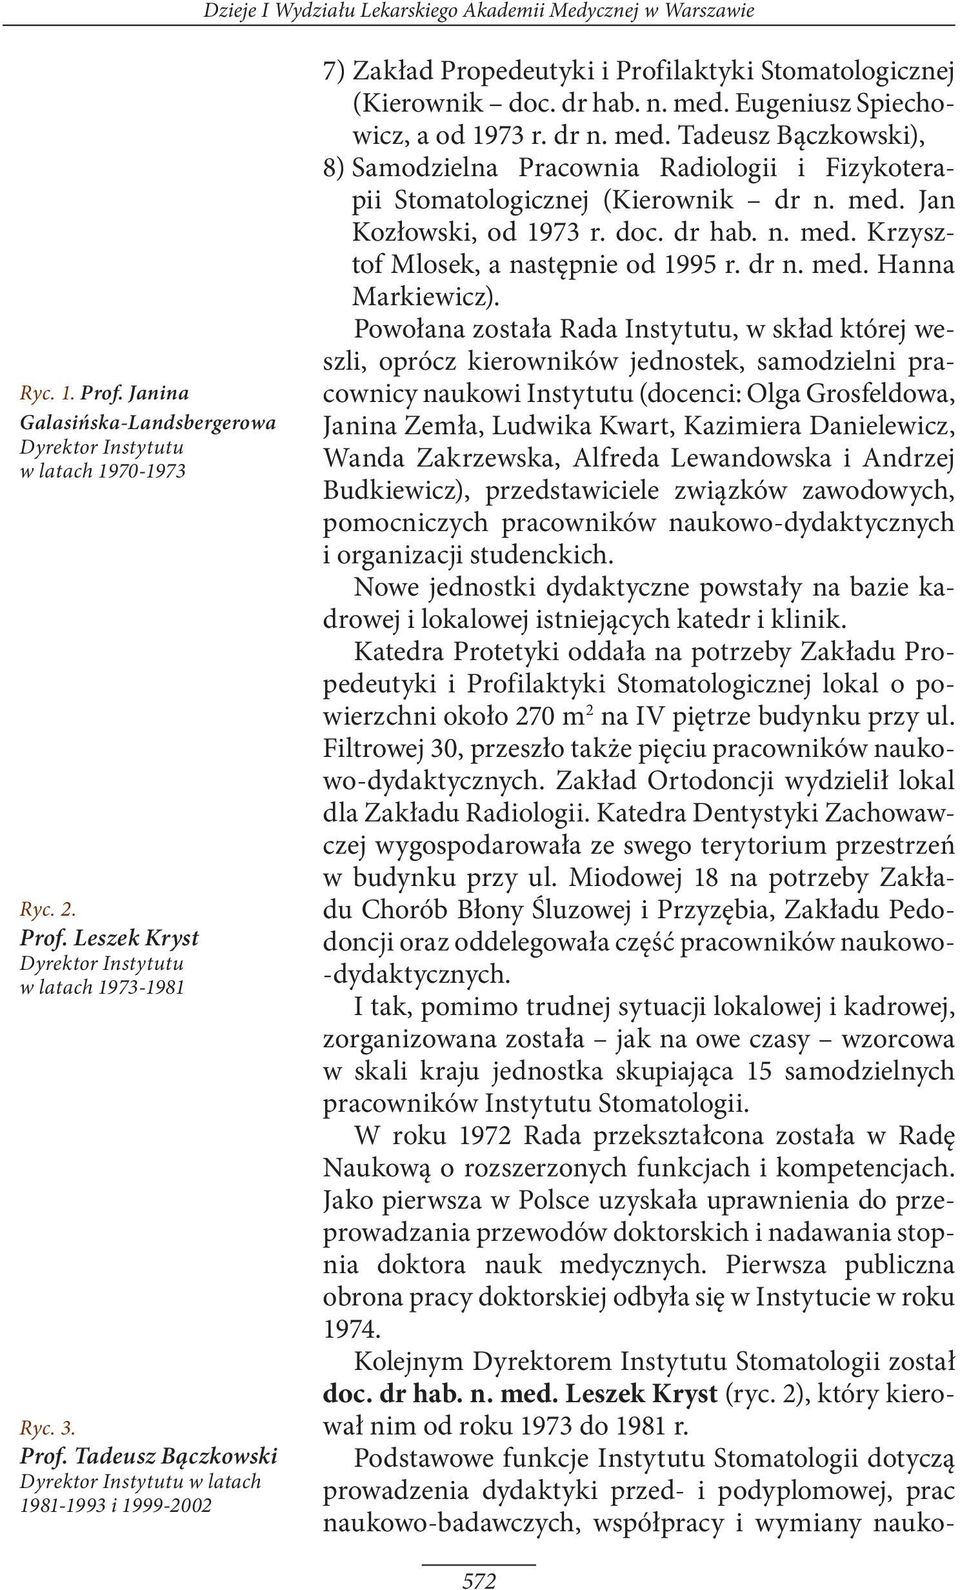 dr n. med. Tadeusz Bączkowski), 8) Samodzielna Pracownia Radiologii i Fizykoterapii Stomatologicznej (Kierownik dr n. med. Jan Kozłowski, od 1973 r. doc. dr hab. n. med. Krzysztof Mlosek, a następnie od 1995 r.